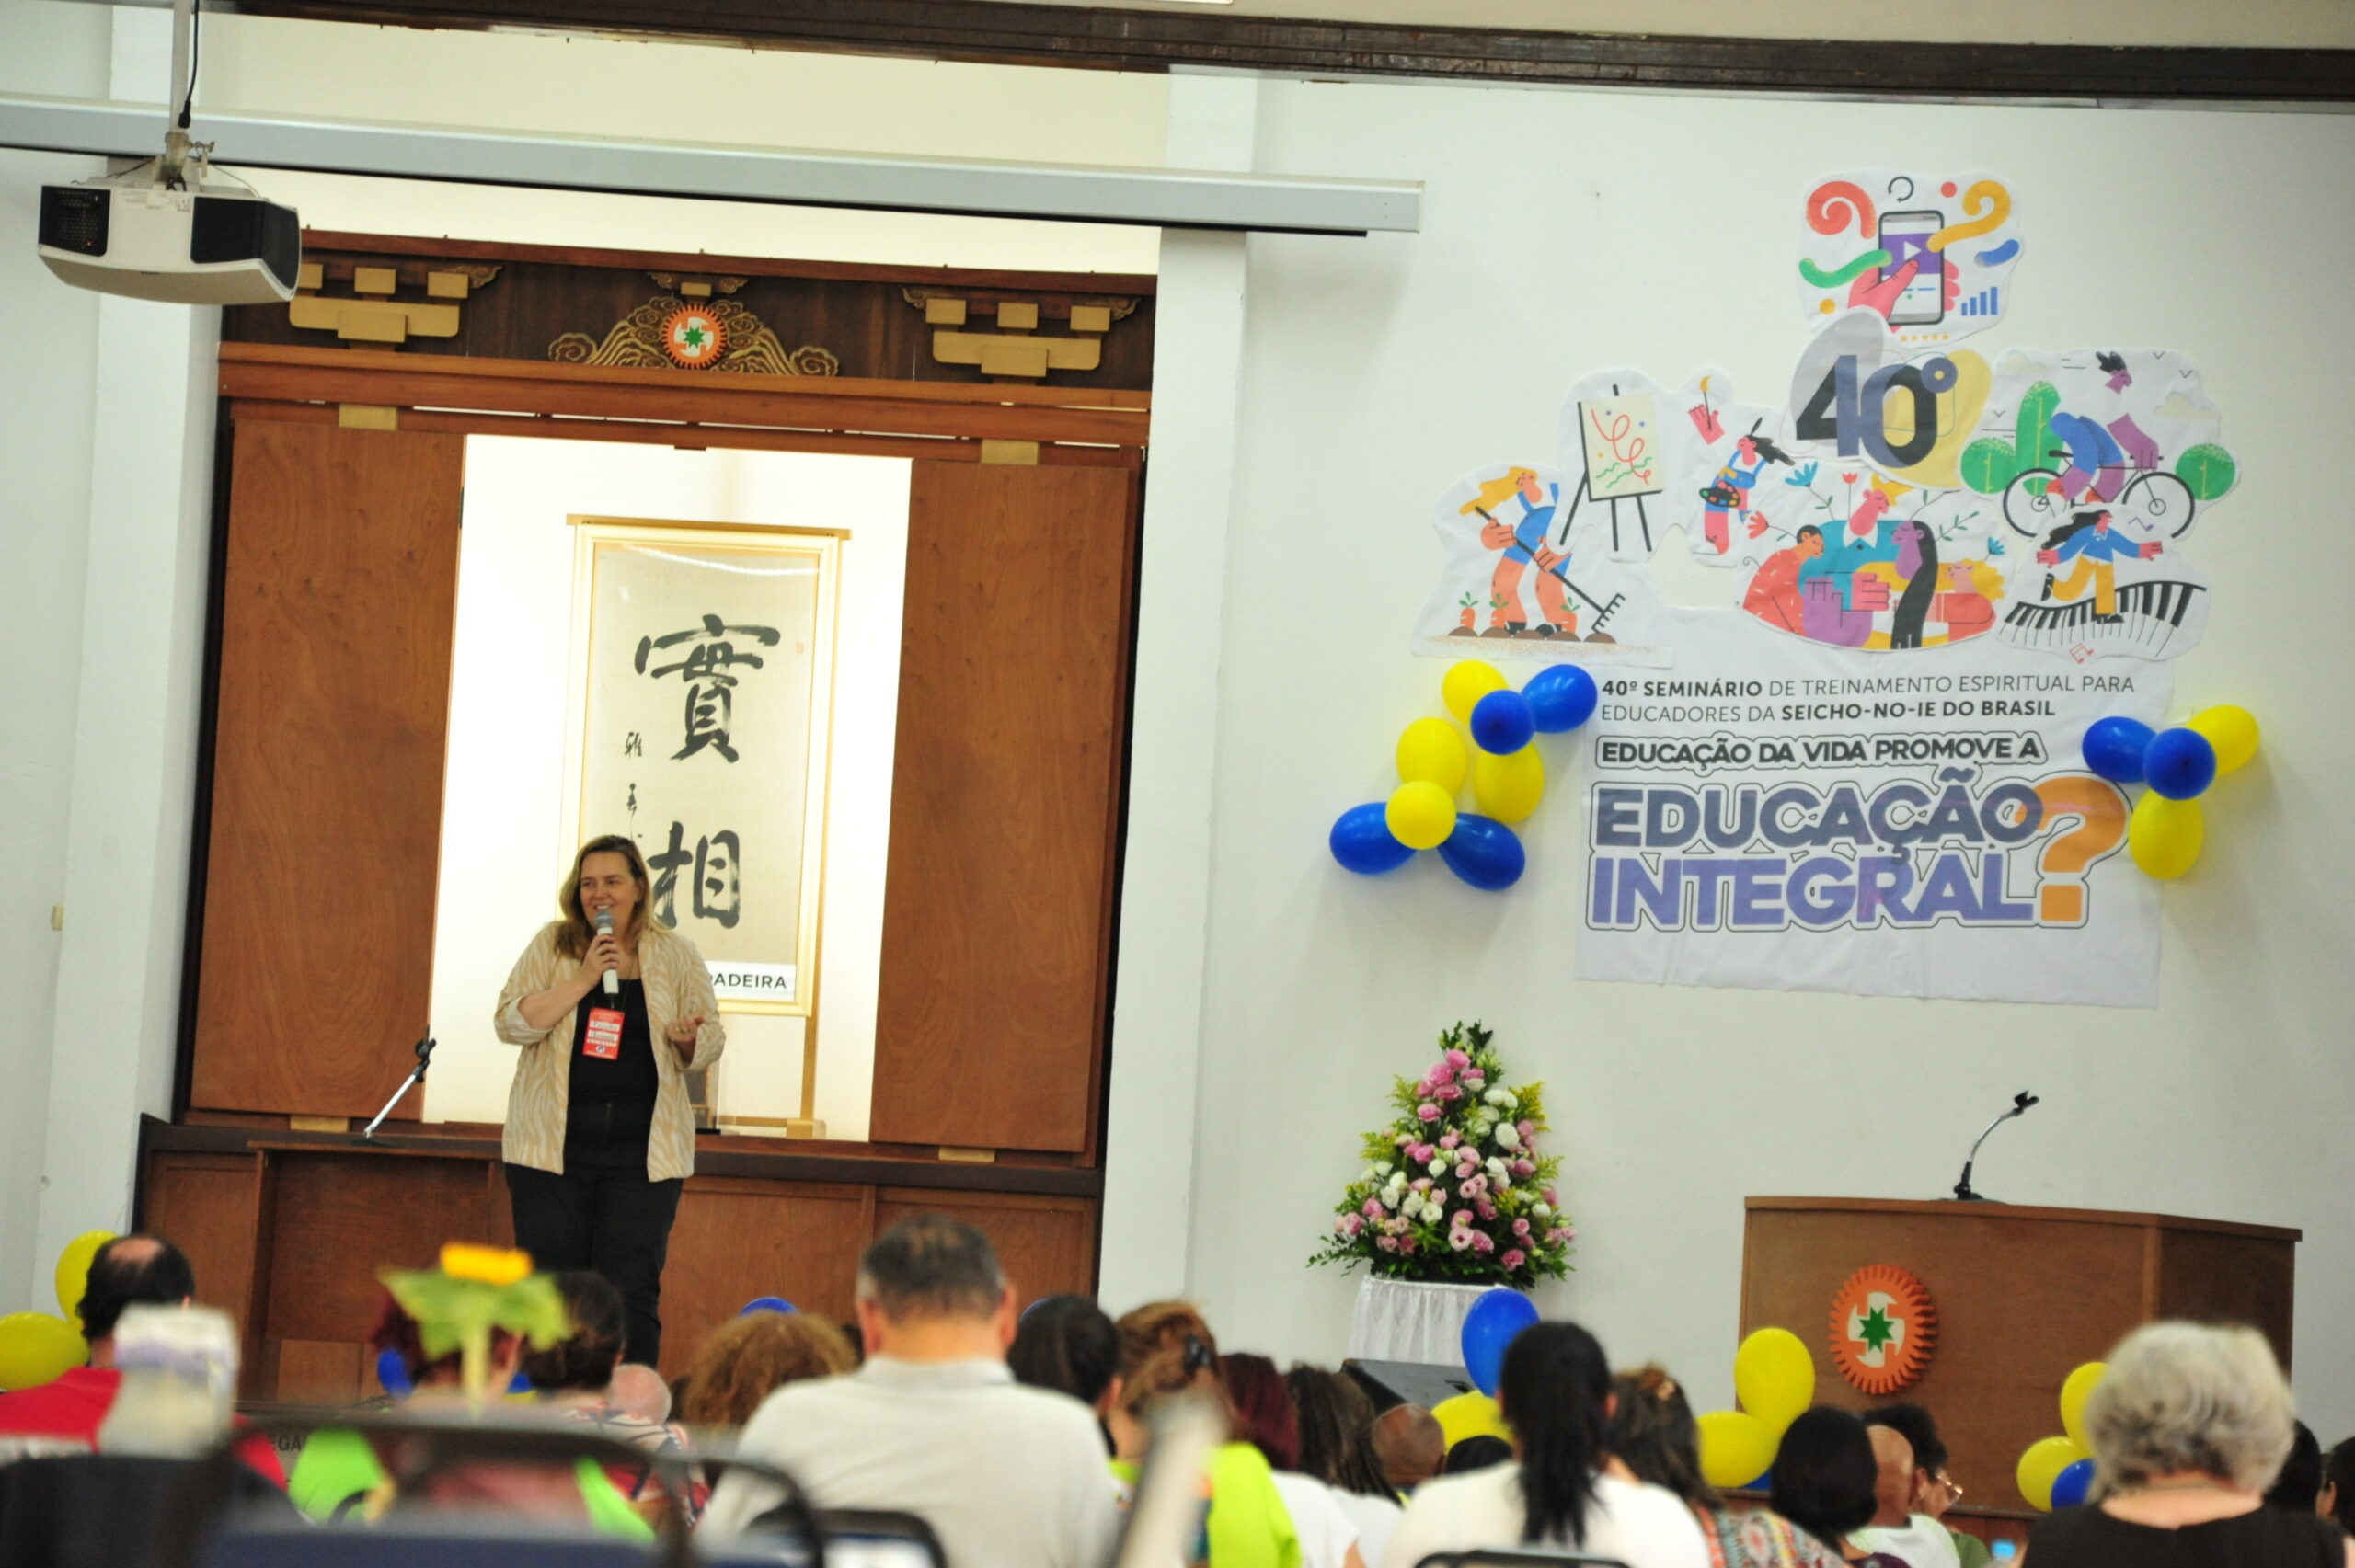 JKM 5062 scaled 40º Seminário de Educadores Estamos em júbilo comemoramos juntos o 40º Seminário de Treinamento Espiritual para Educadores na Academia Sul-Americana da SEICHO-NO-IE DO BRASIL em Ibiúna- SP.